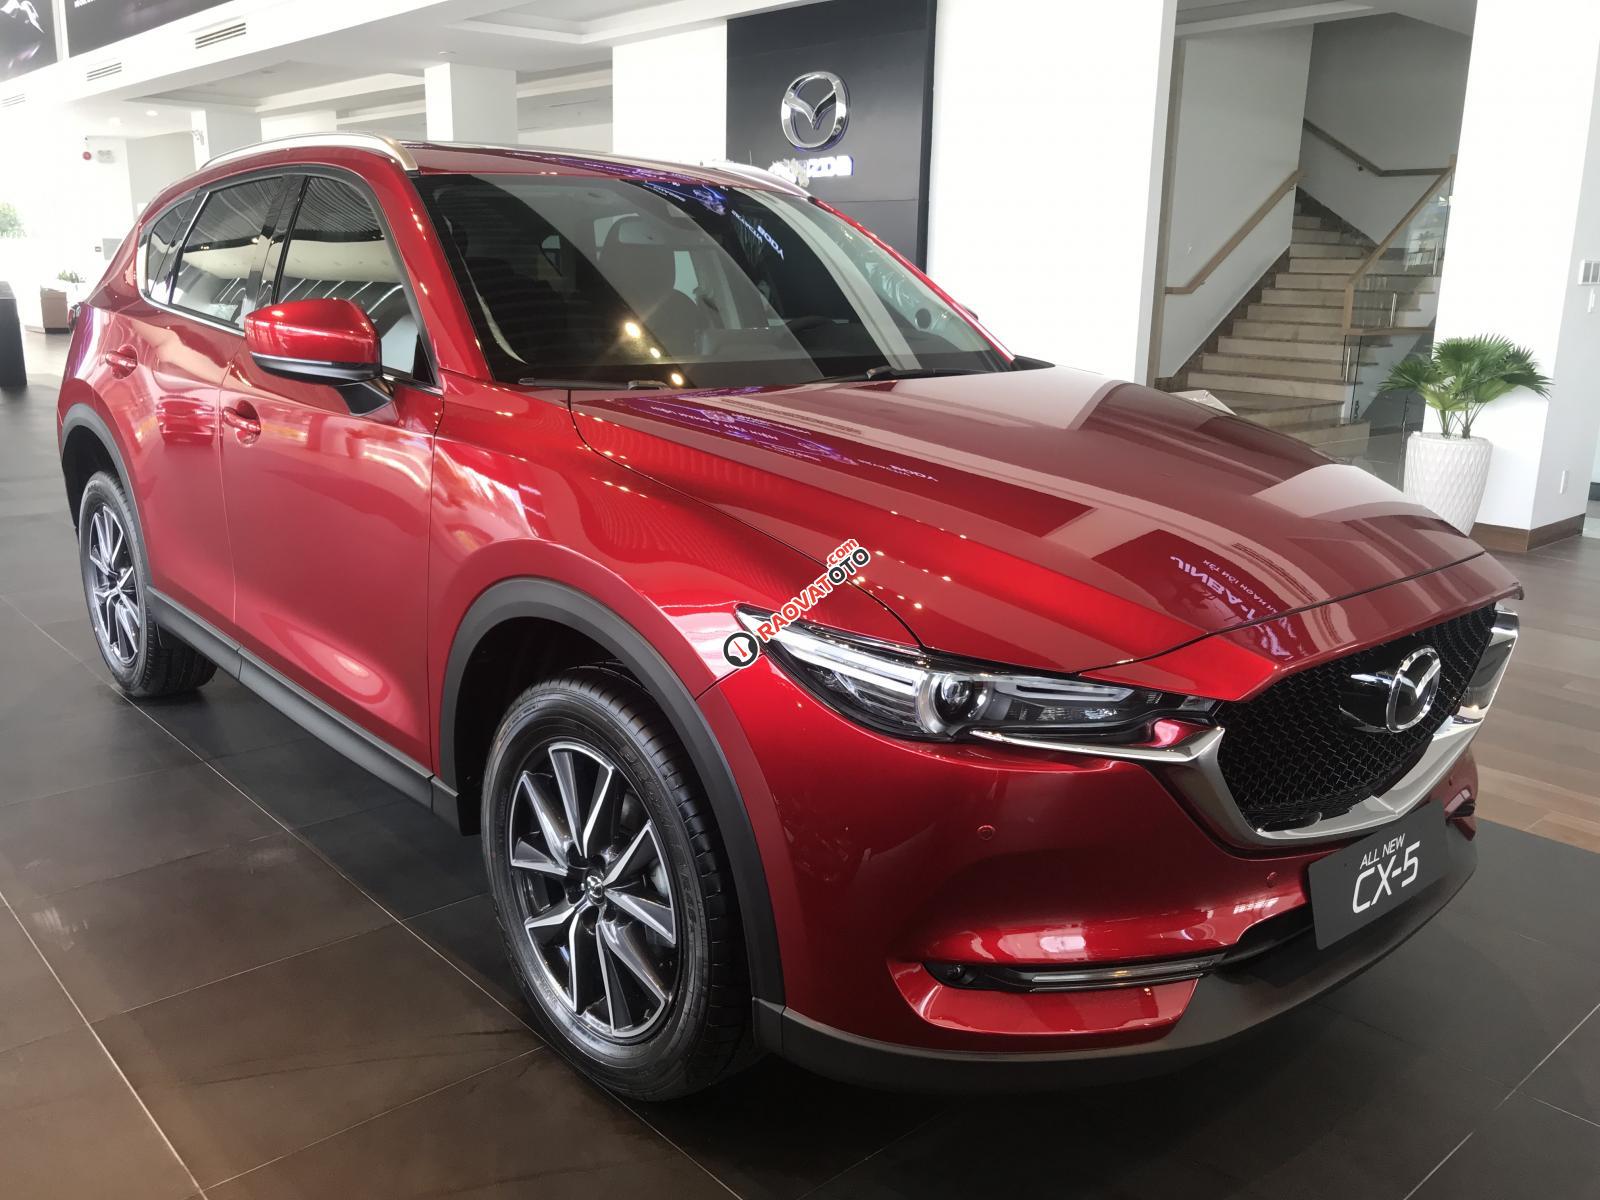 Bán Mazda CX5 2.0L FWD 2019, đỏ pha lê, hỗ trợ vay 85%, trả trước 200tr giao xe, LH: 0376684593-4